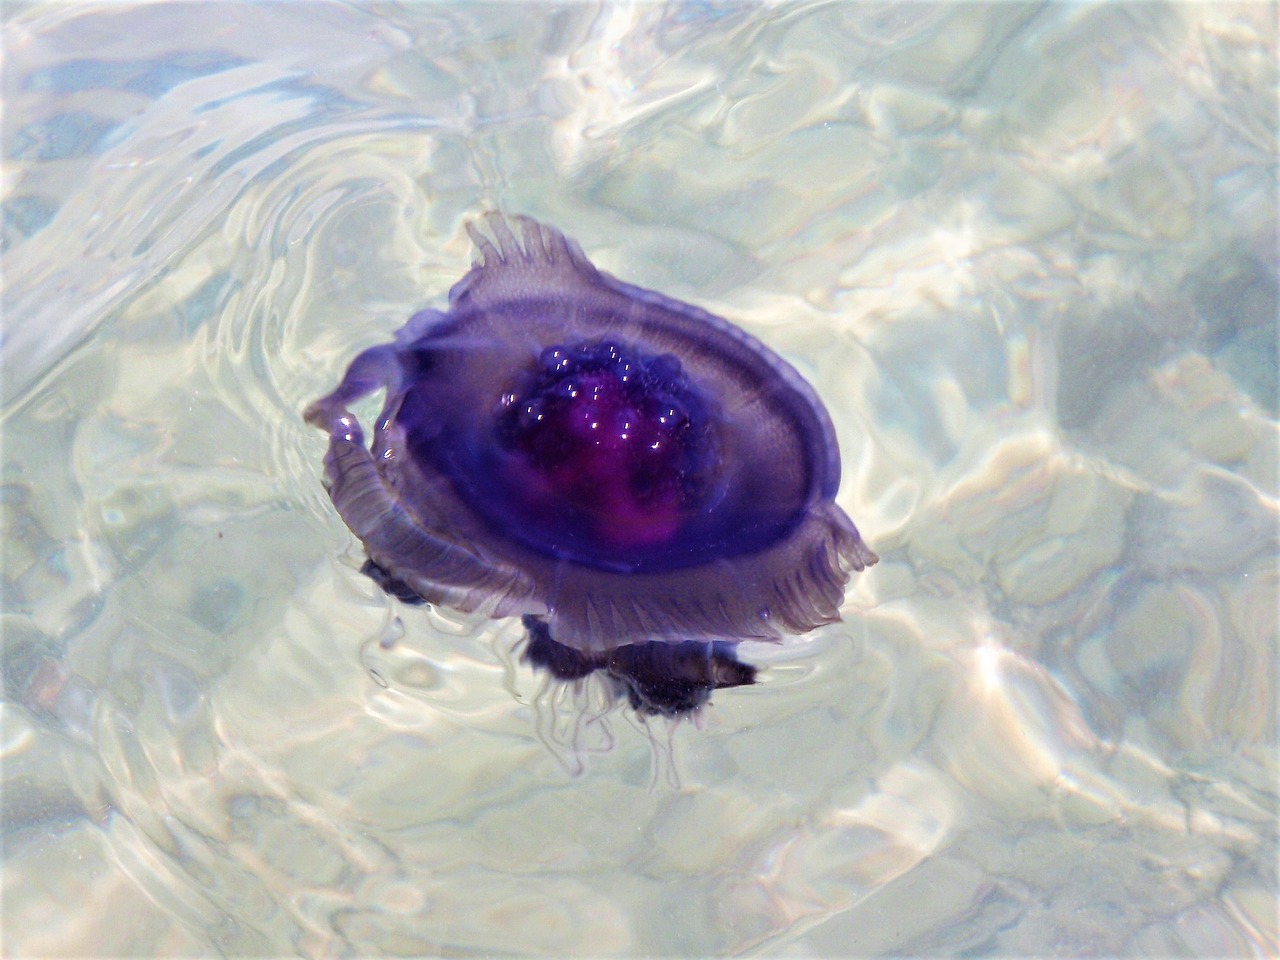 jellyfish filoletowy drift free photo